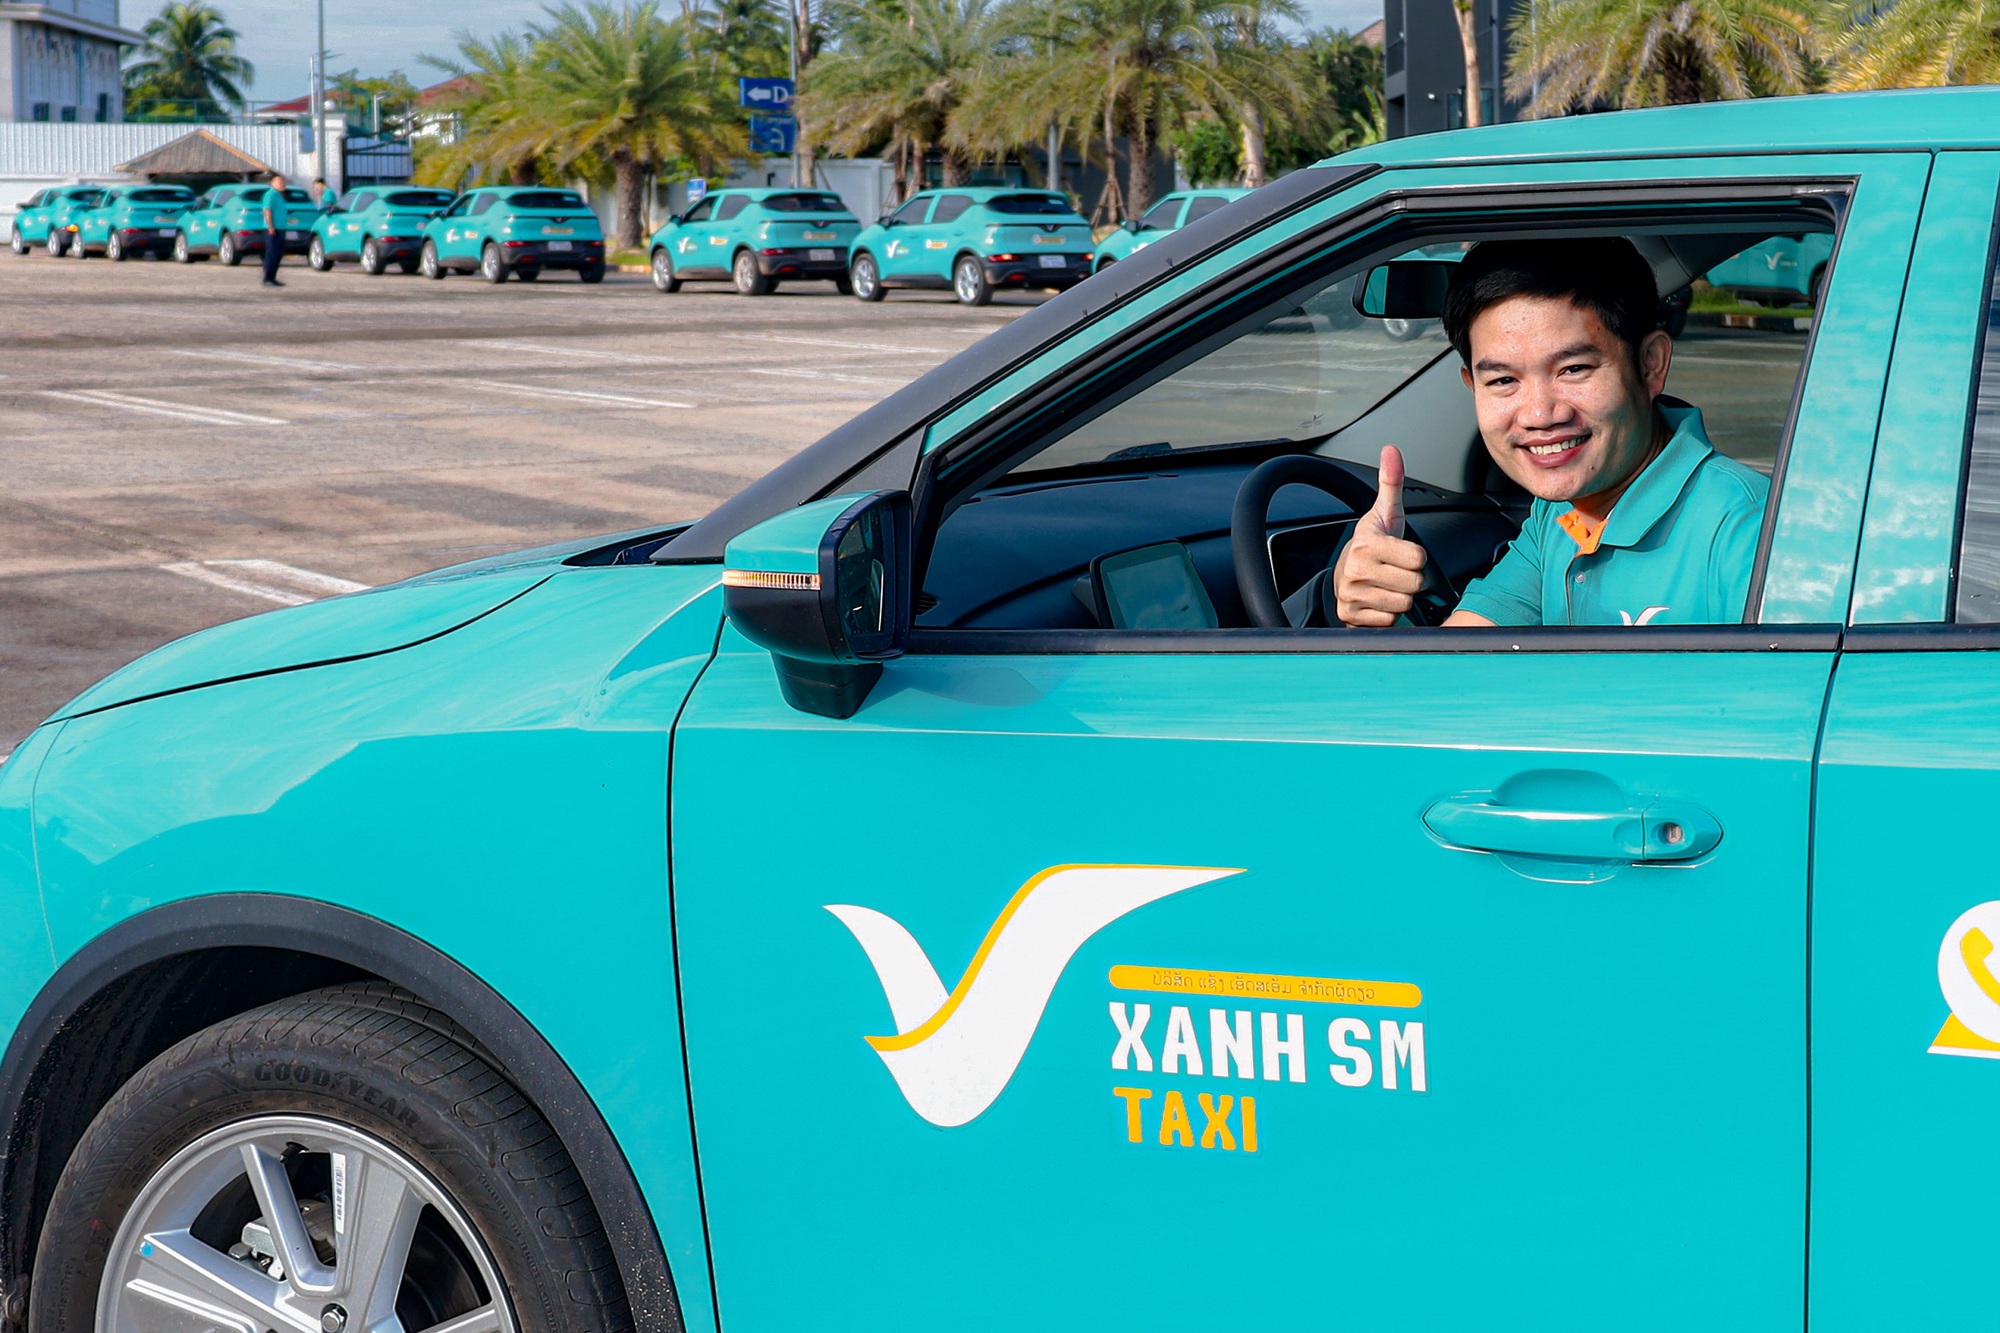 Taxi điện Xanh SM khai trương dịch vụ tại Lào, hướng ra thị trường Đông Nam Á - Ảnh 2.